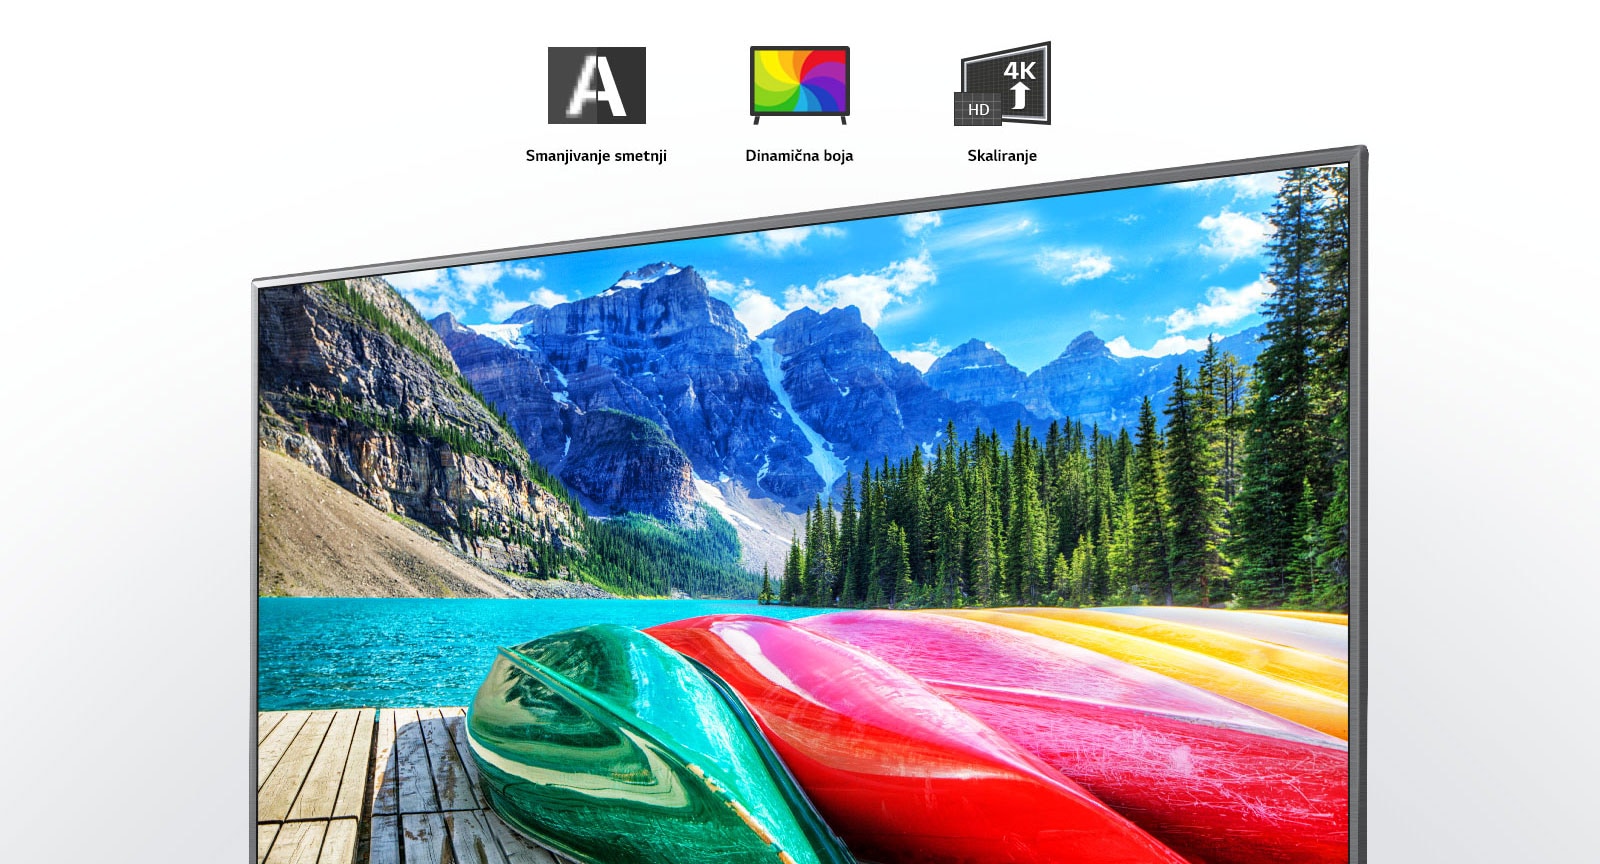 Smanjivanje smetnji, dinamična boja i ikone za skaliranje, uz zaslon televizora koji prikazuje panoramsku fotografiju planina, šume i jezera.